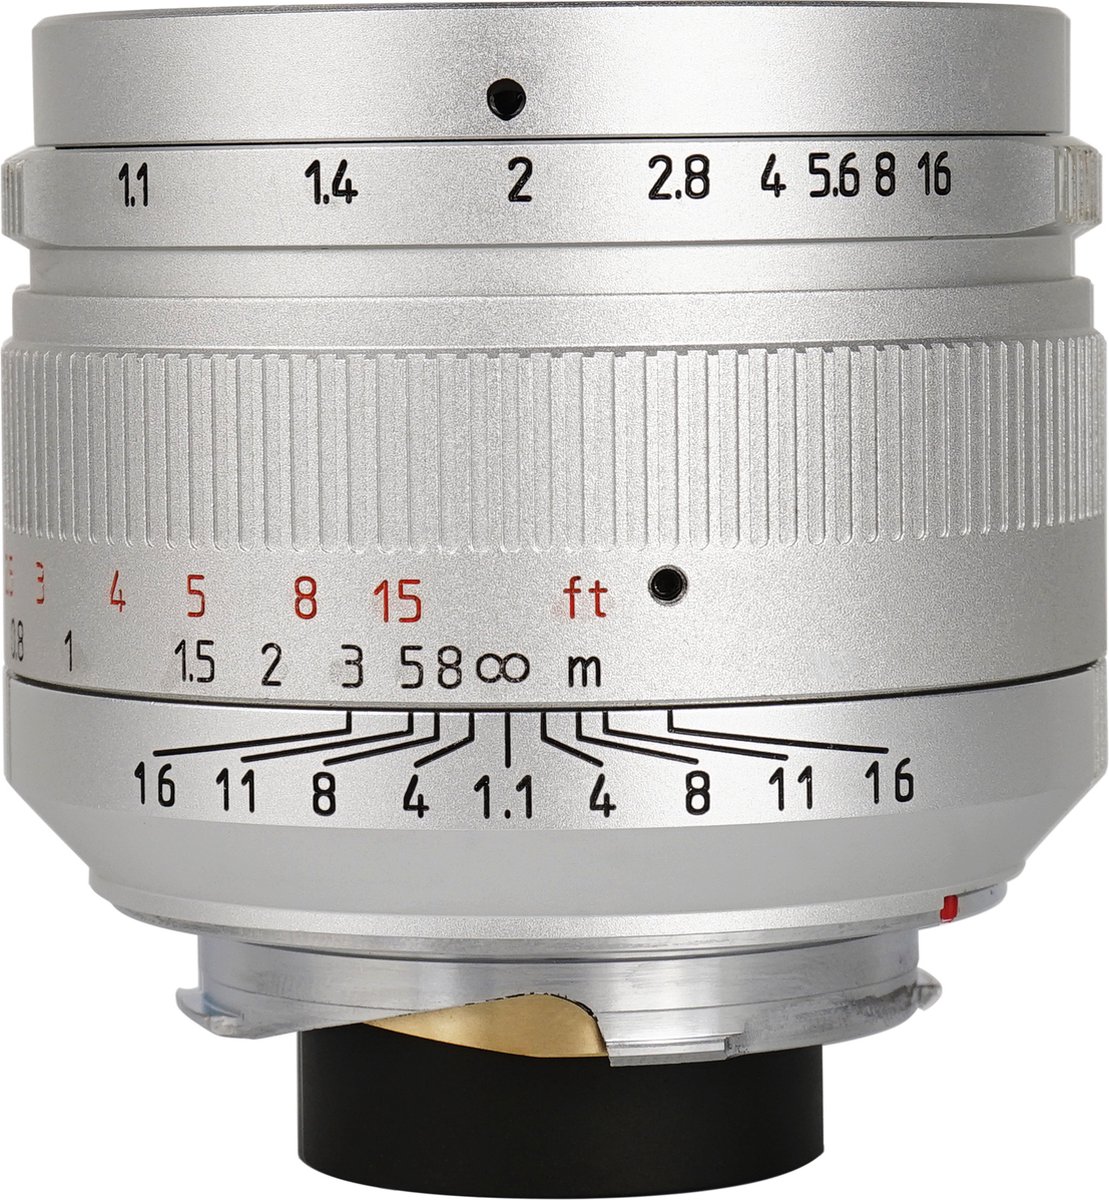 7artisans – Cameralens - M 50mm f/1.1 voor Leica M, zilver